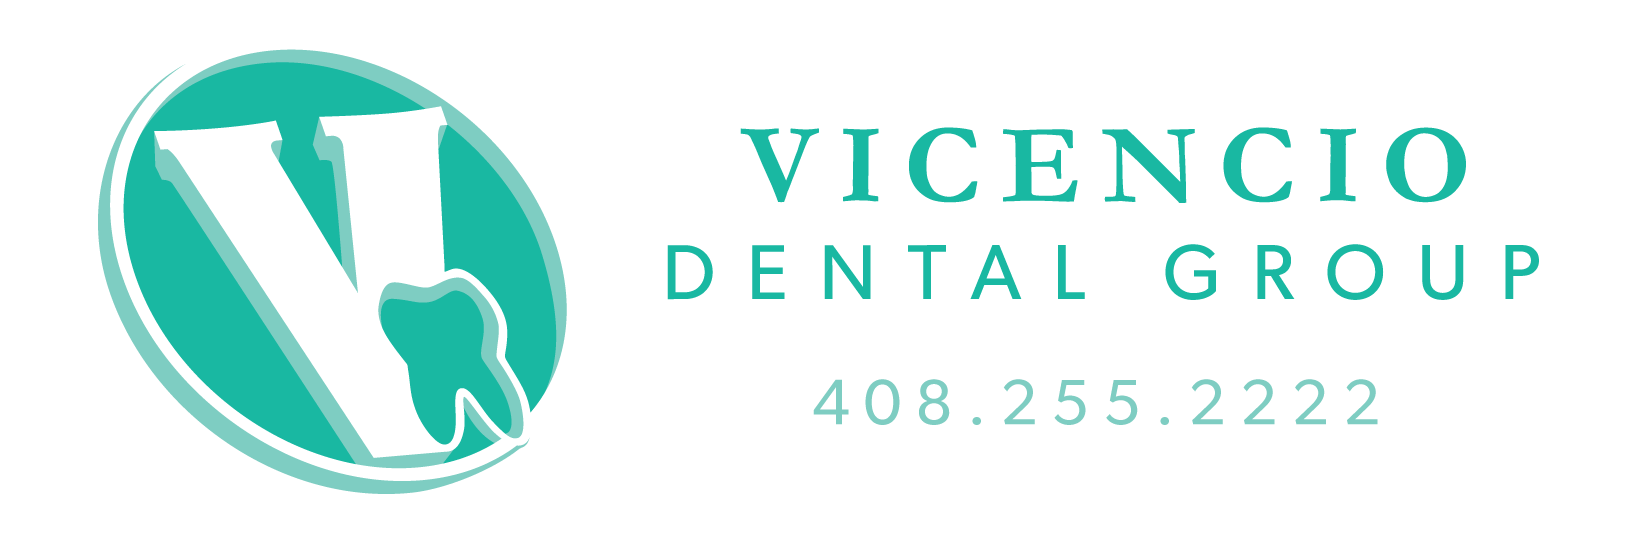 Vicencio Dental Group